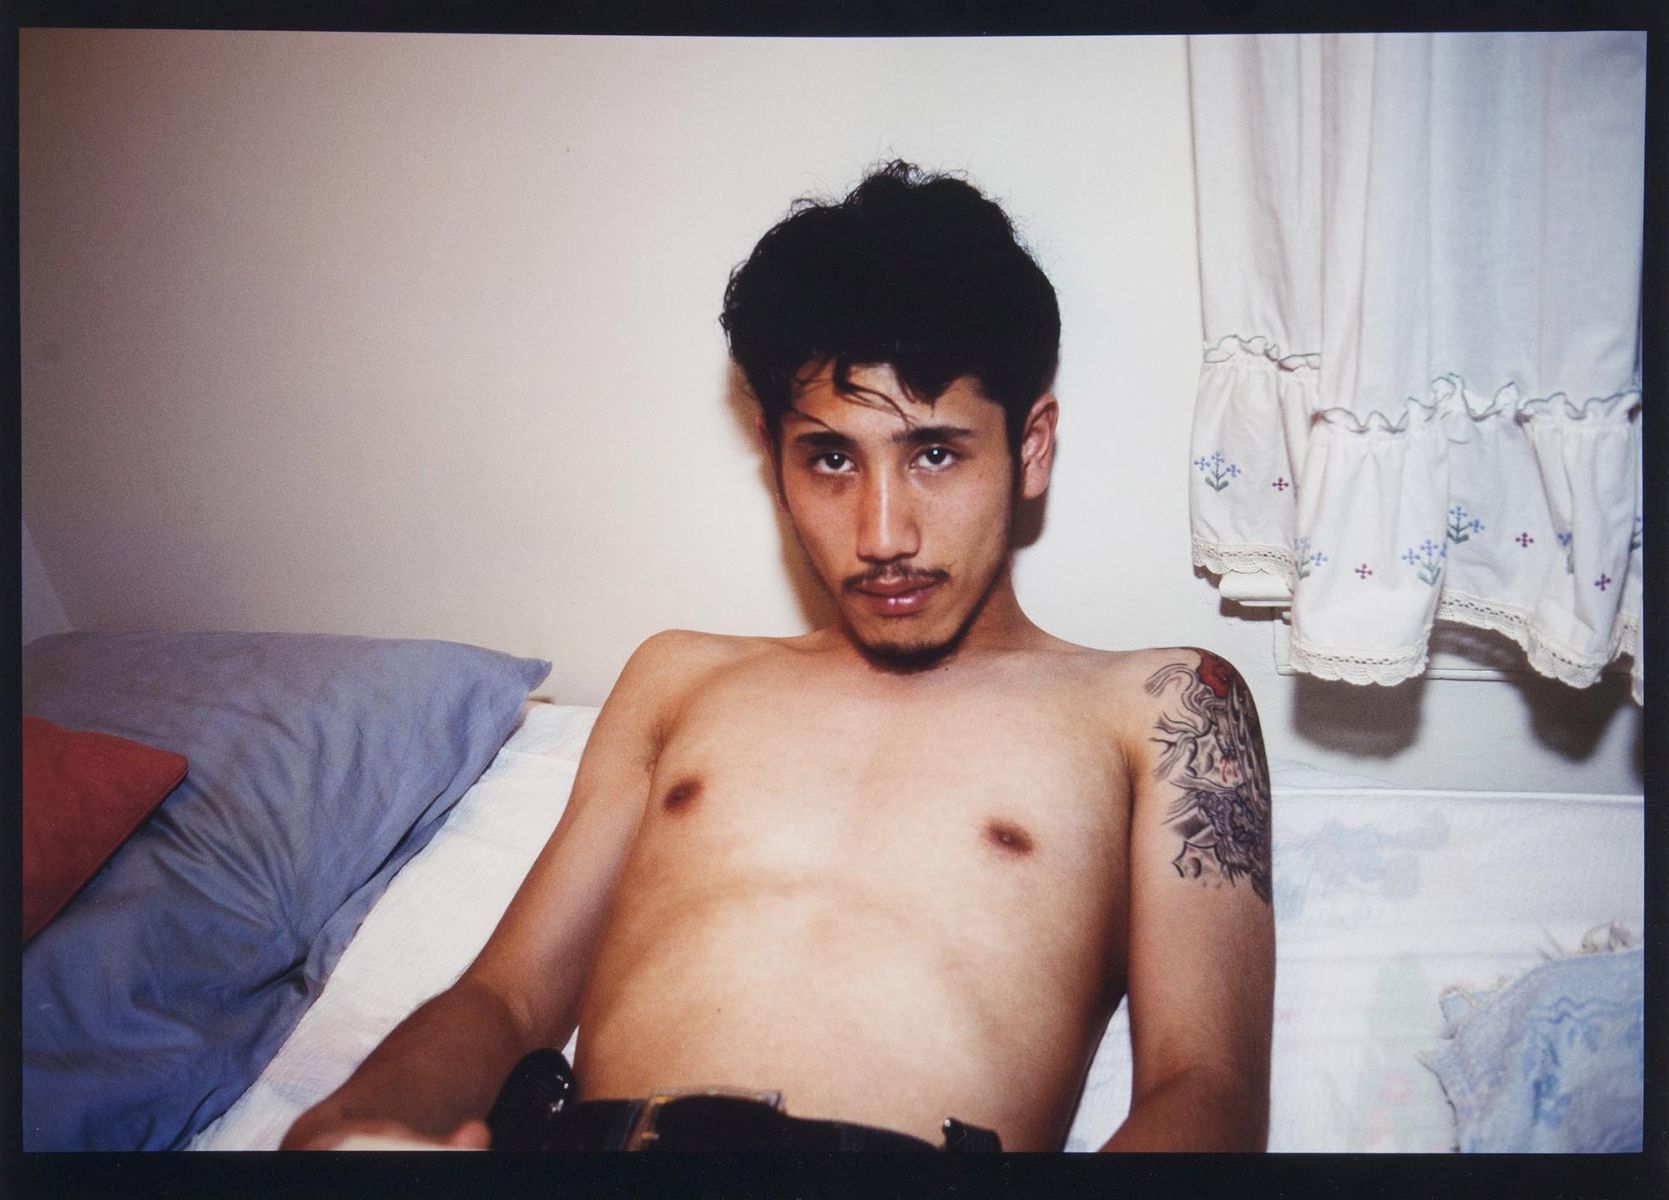 Kee in Bed, E. Hampton, N.Y., 1988